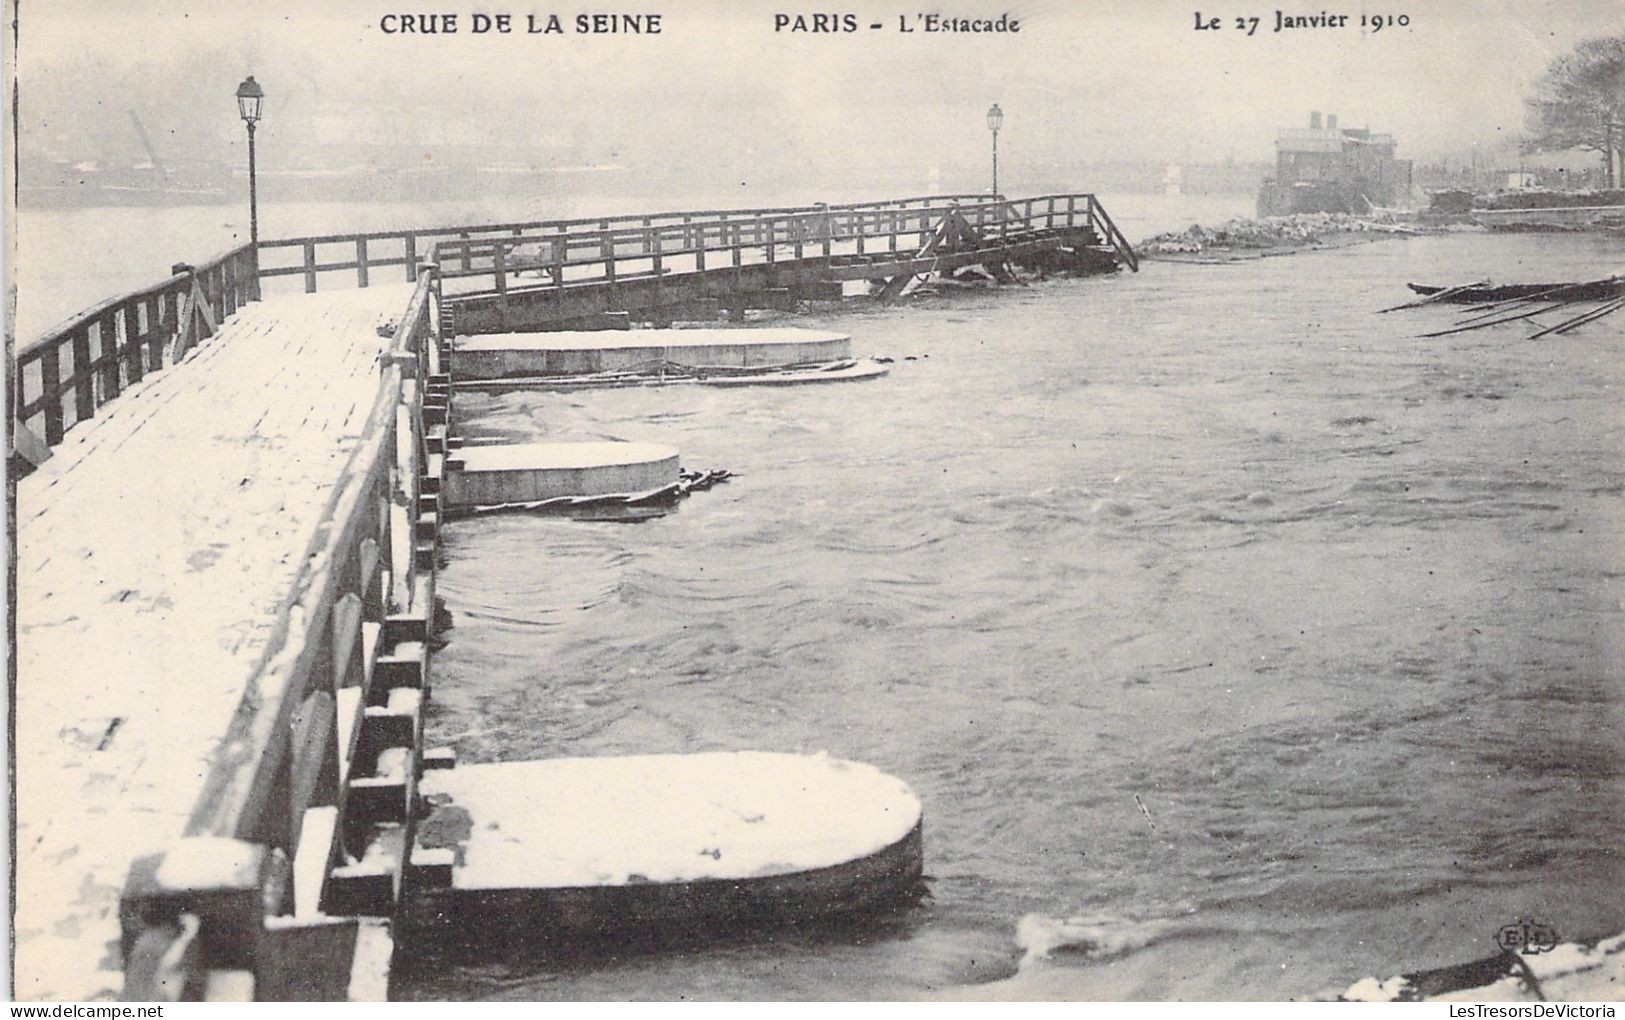 FRANCE - Paris - La Grande Crue De La Seine - L'estacade - 27 Janvier 1910 - Carte Postale Ancienne - Die Seine Und Ihre Ufer